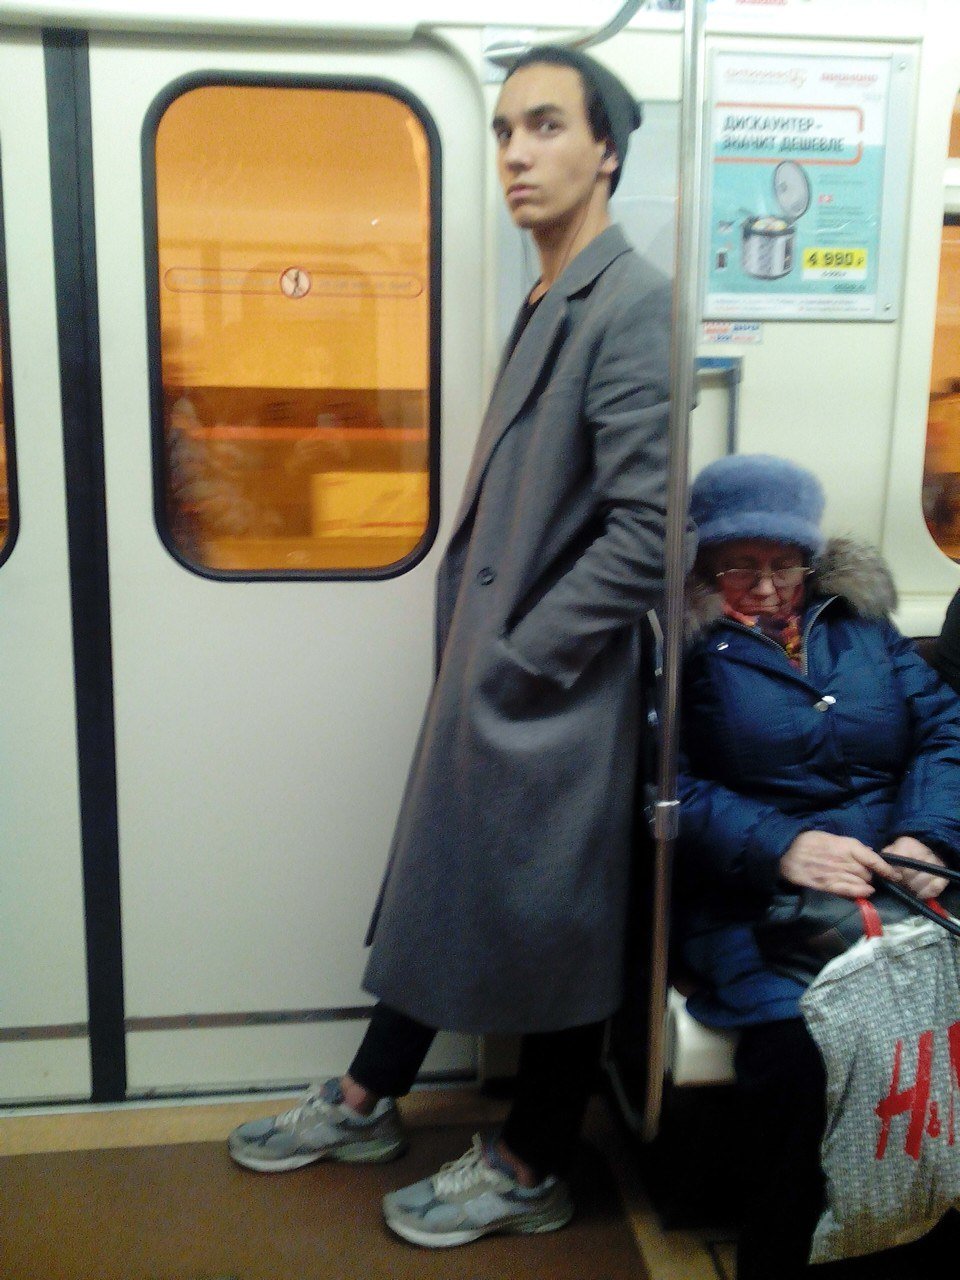 Чел в метро. Люди в метро. K.lbdvtnhj. Обычные люди в метро. Стоящие люди в метро.